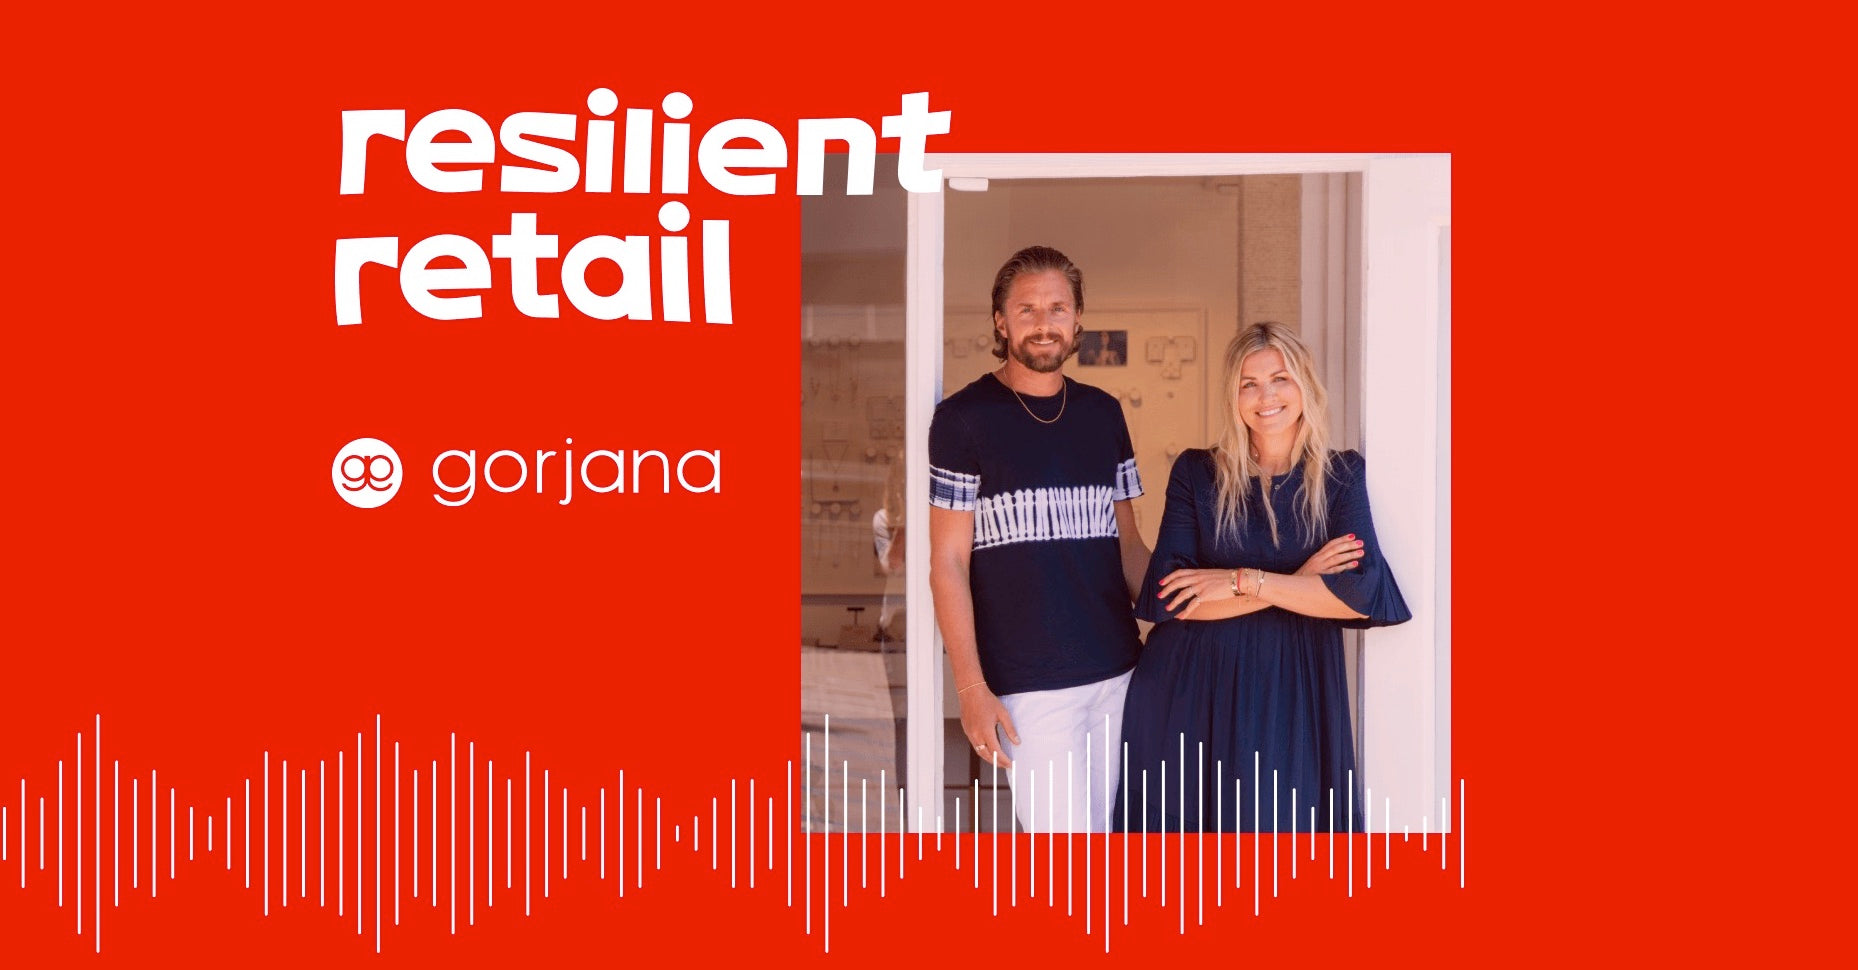 Resilient Retail - Gorjana episode